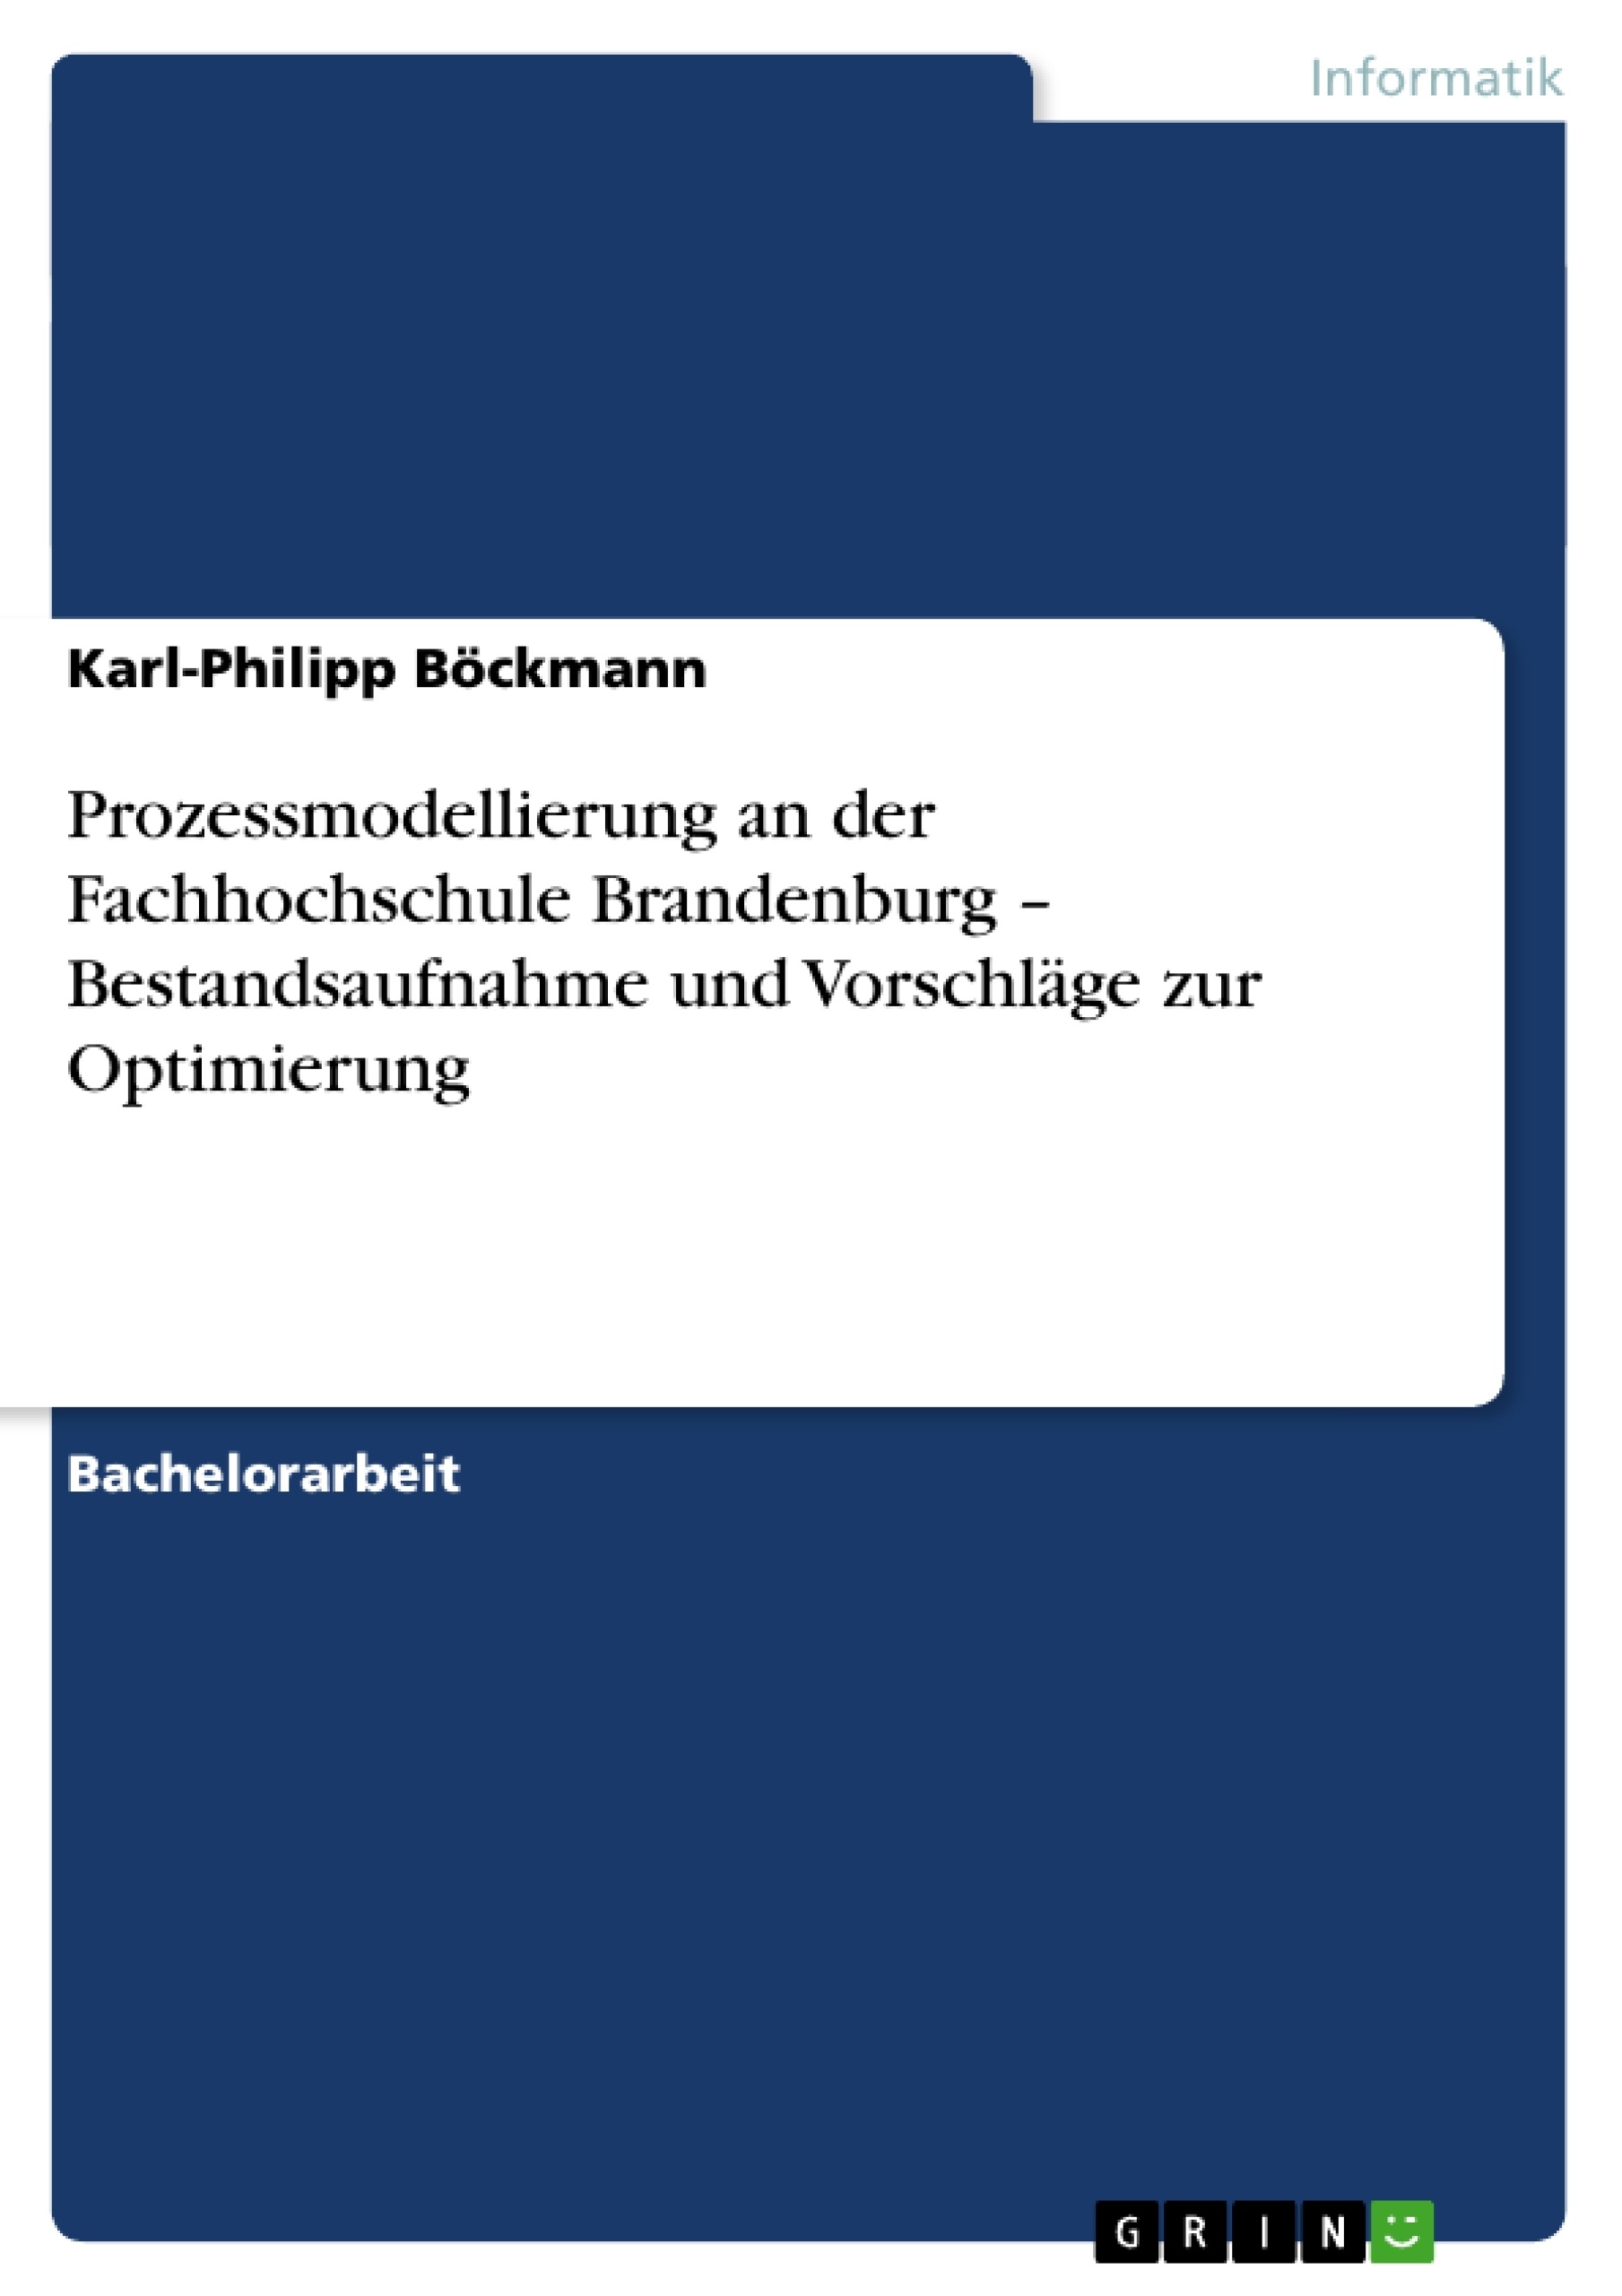 Title: Prozessmodellierung an der Fachhochschule Brandenburg: Bestandsaufnahme und Vorschläge zur Optimierung